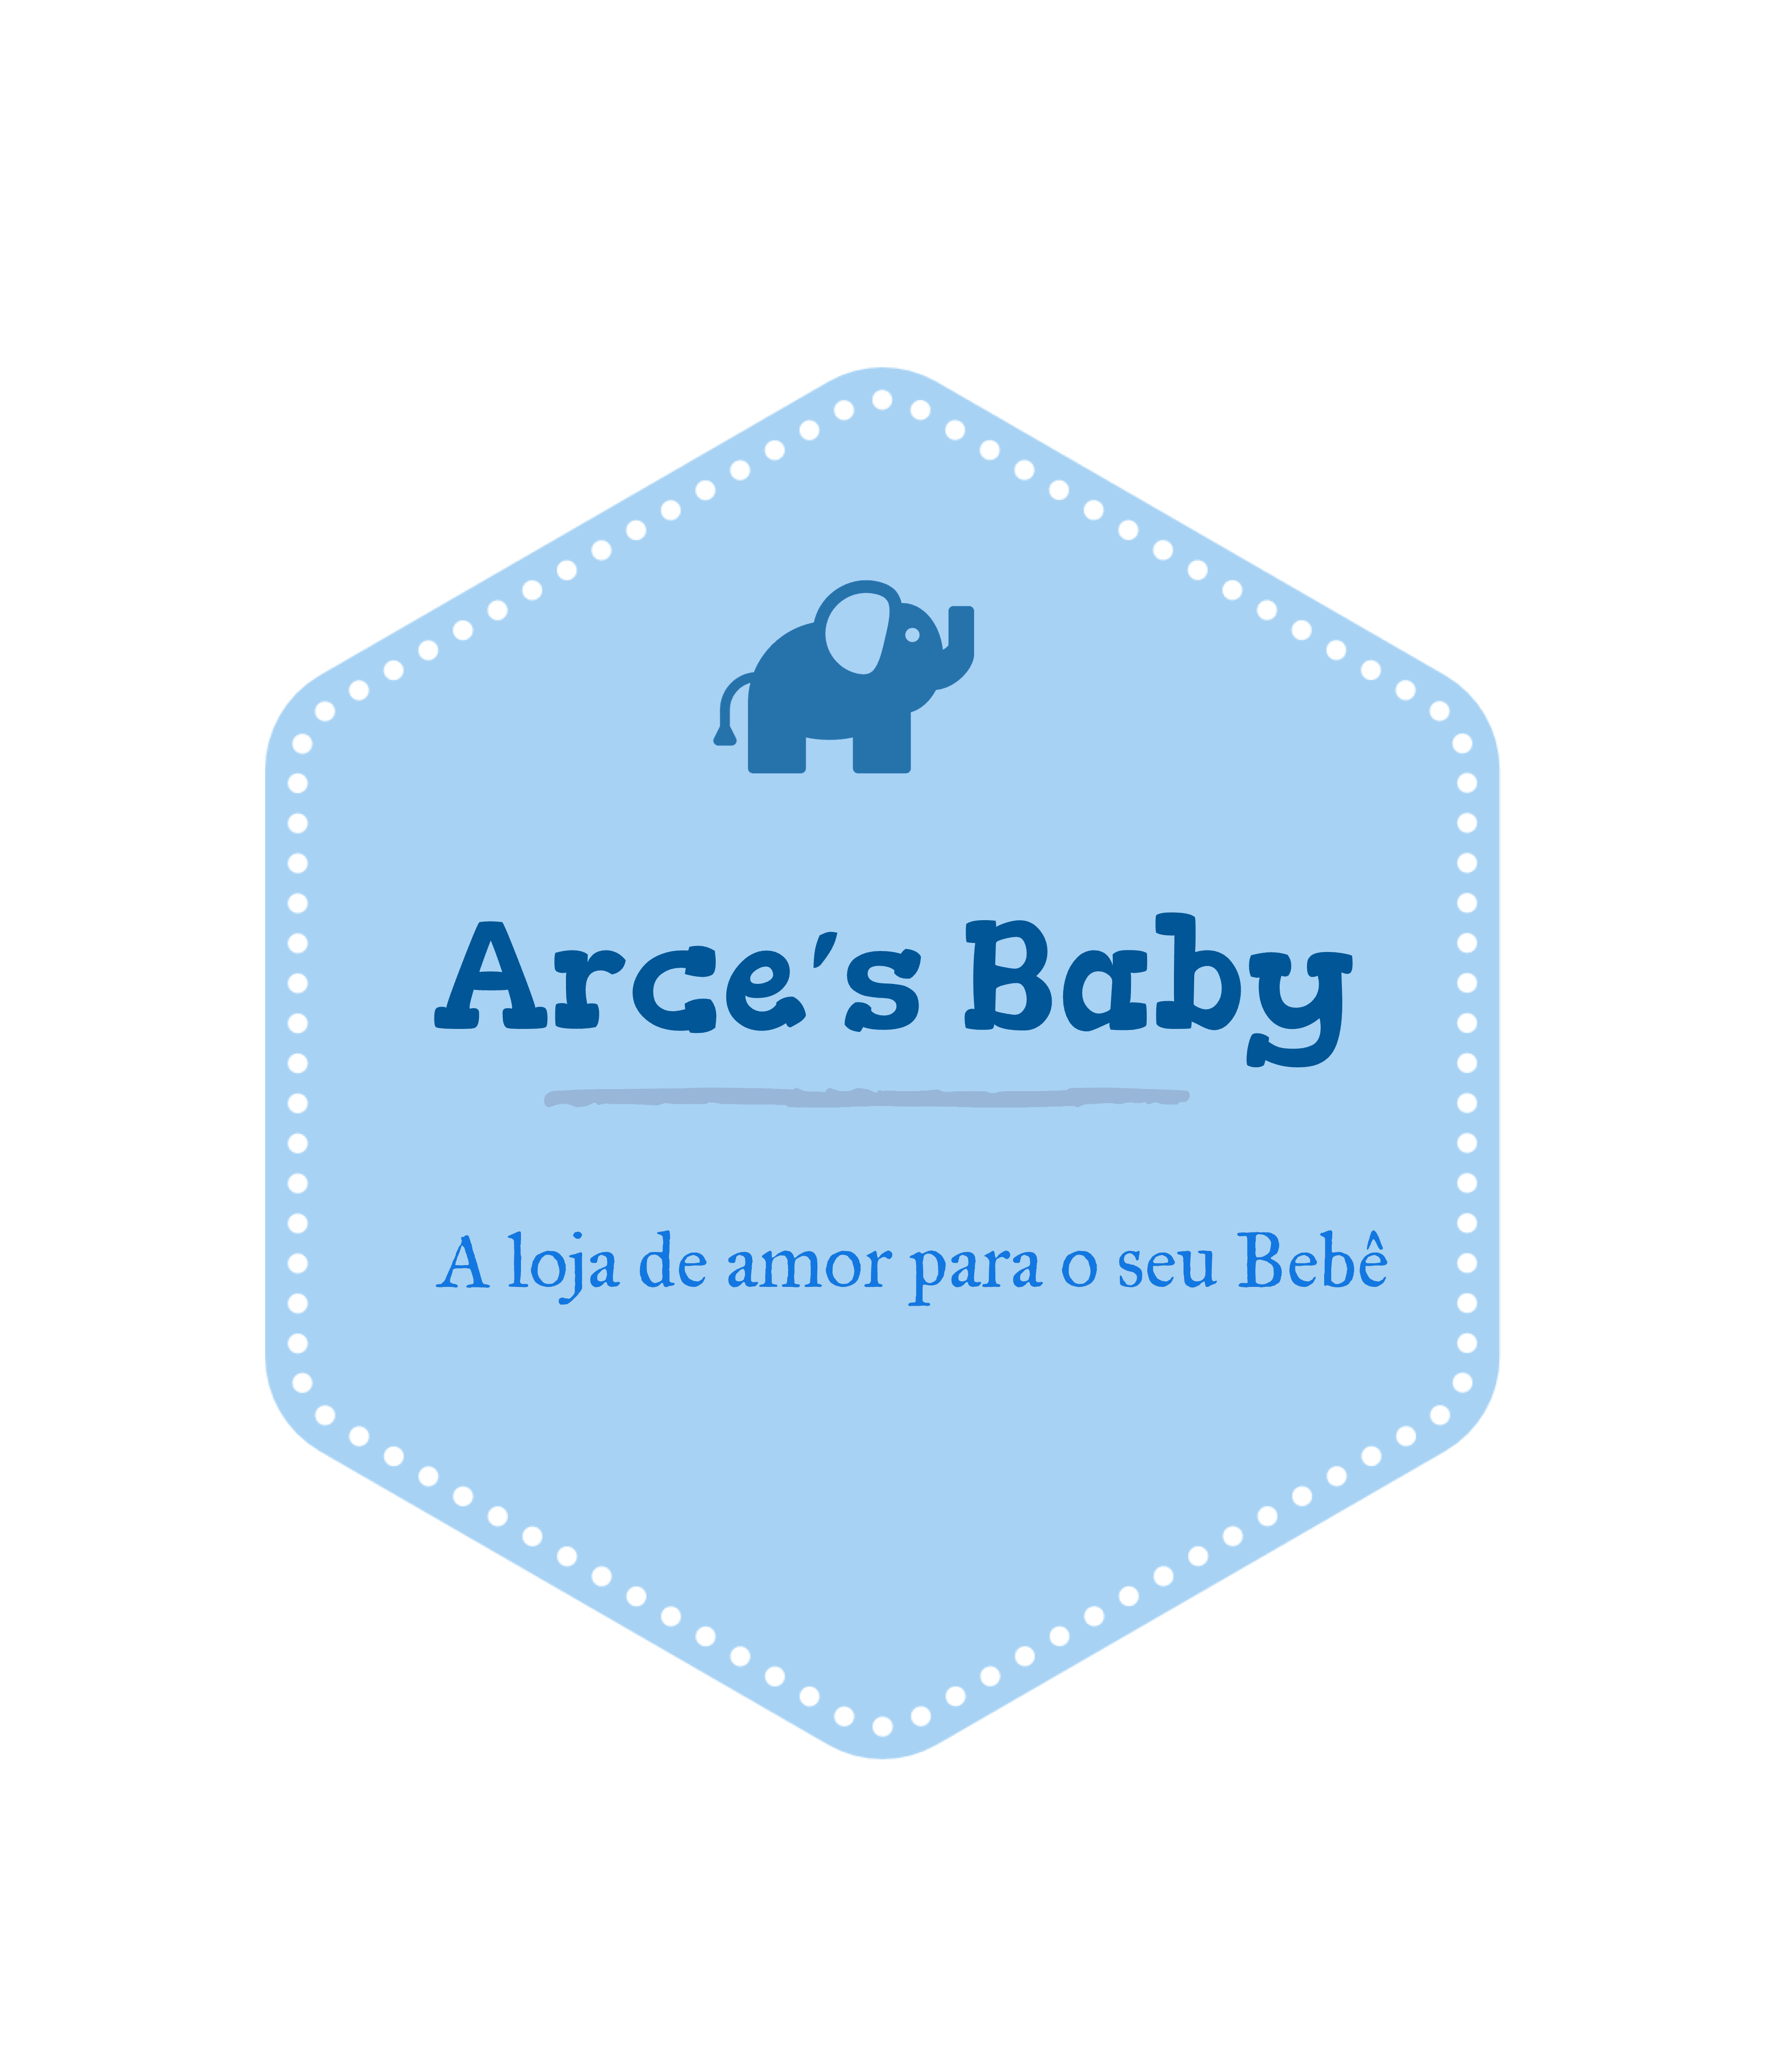 Arce’s Baby